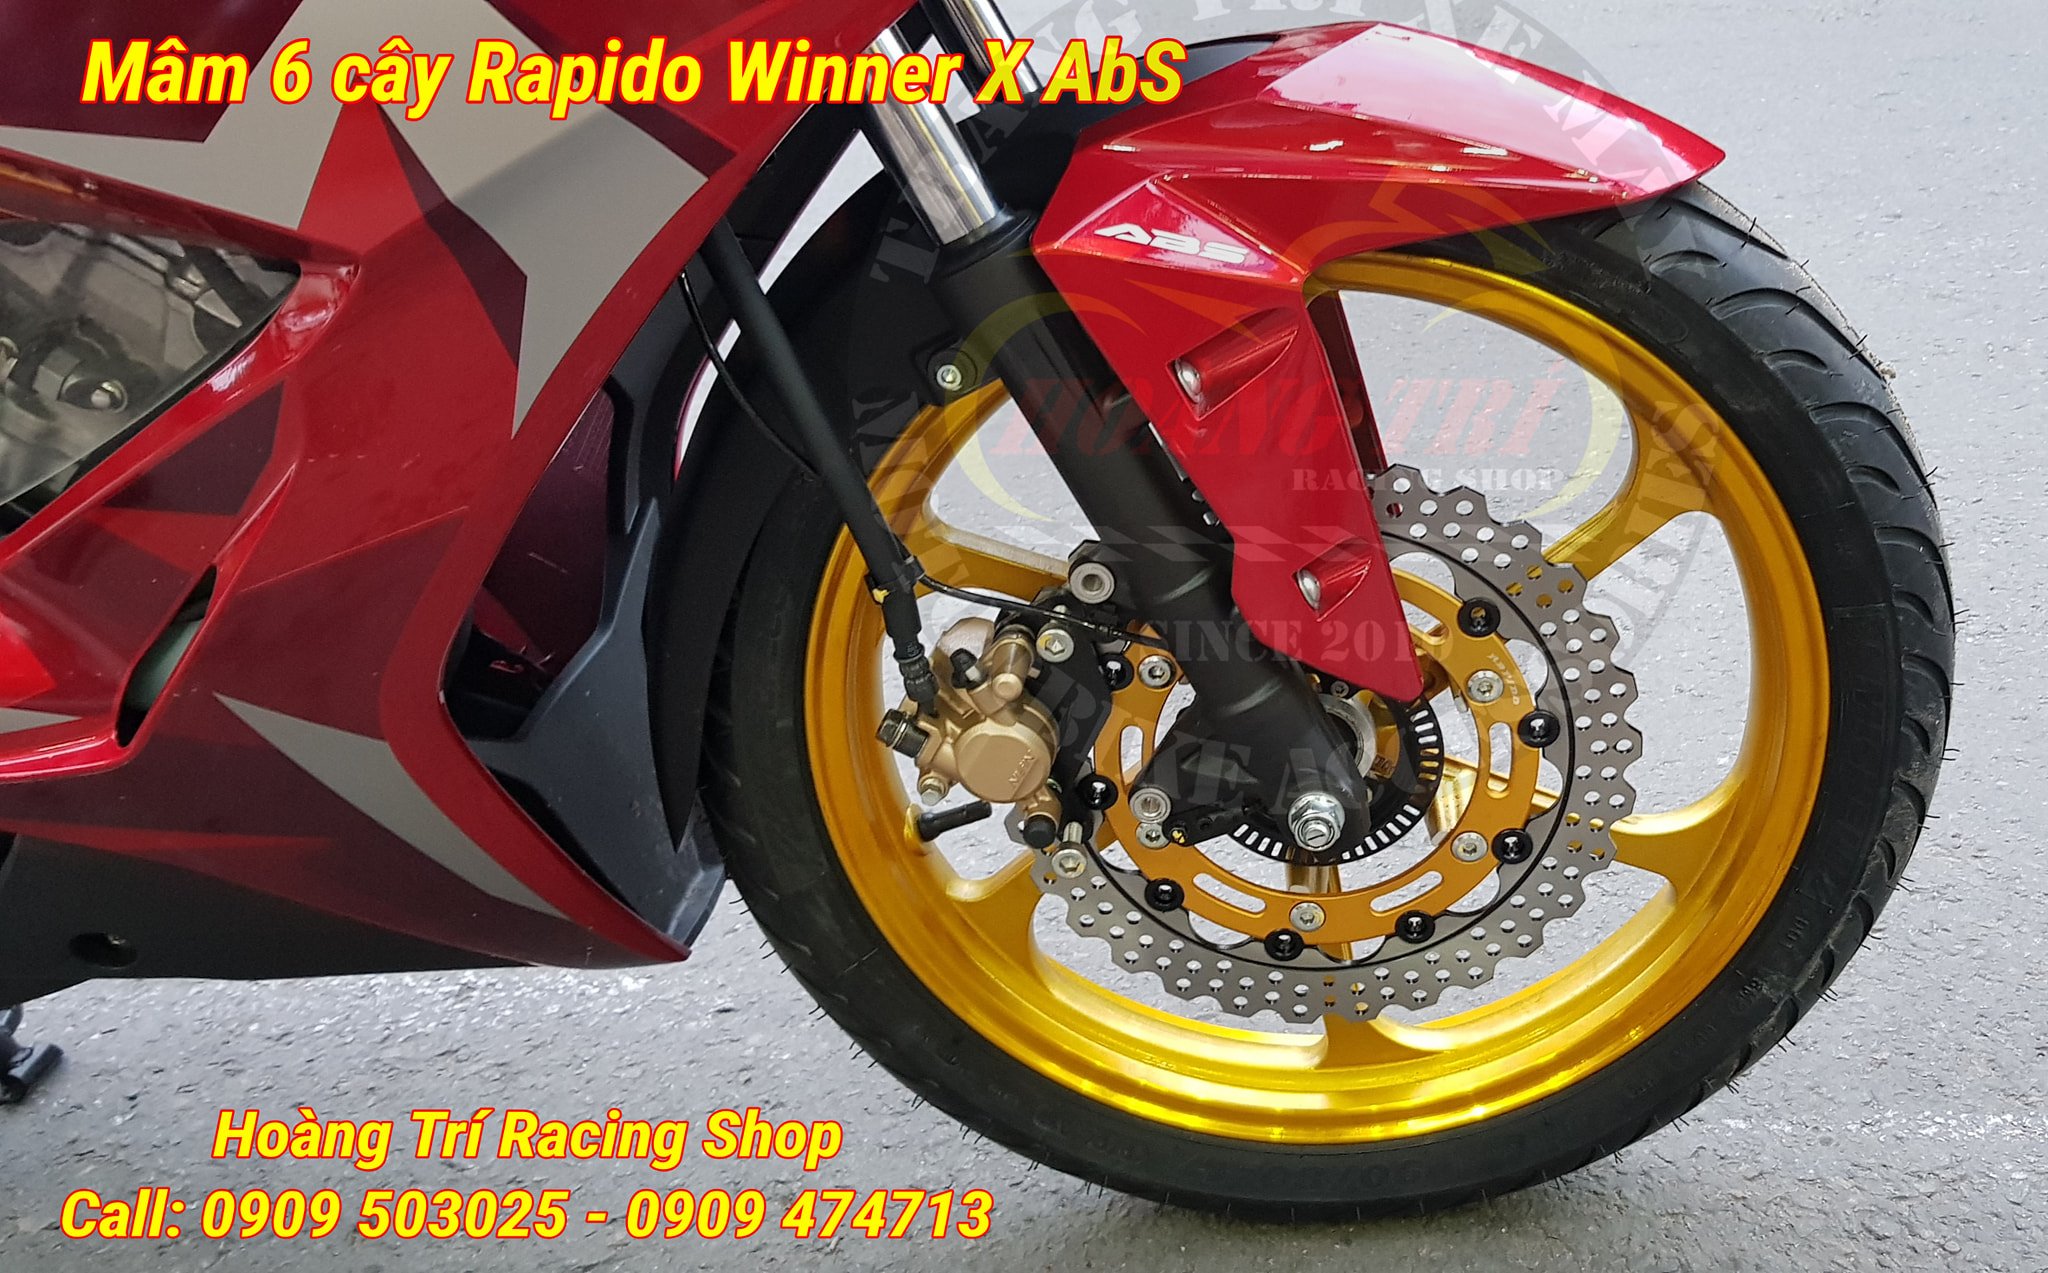 Mâm Rapido 6 cây lắp đặt chuẩn chỉnh Winner X 